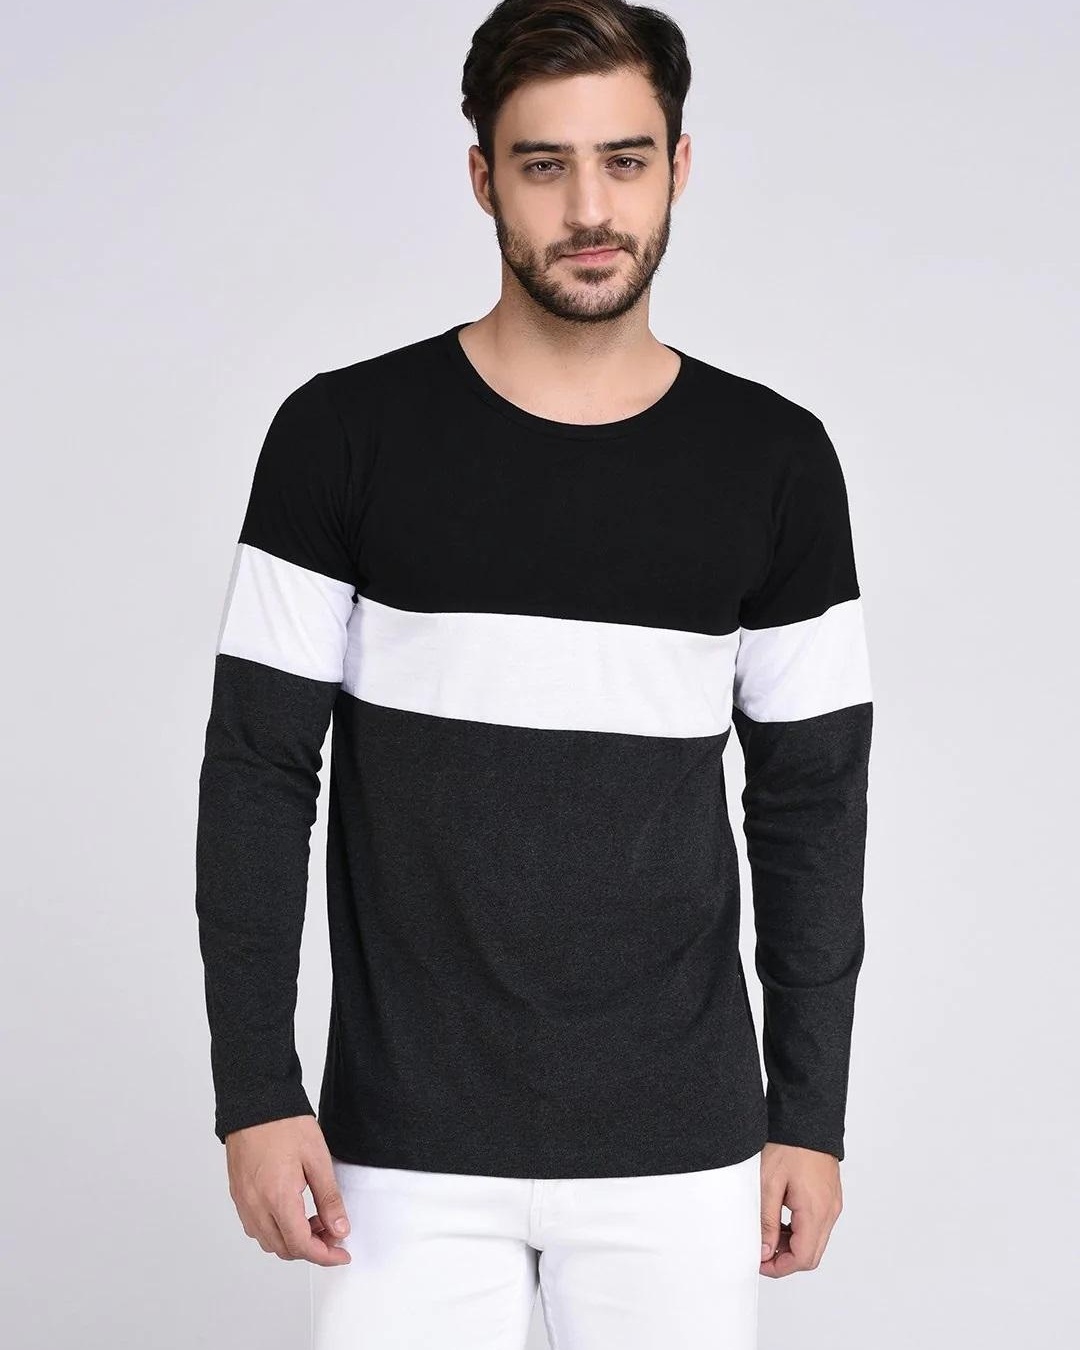 Buy Men's Black Color Block Slim Fit T-shirt for Men Black Online at ...